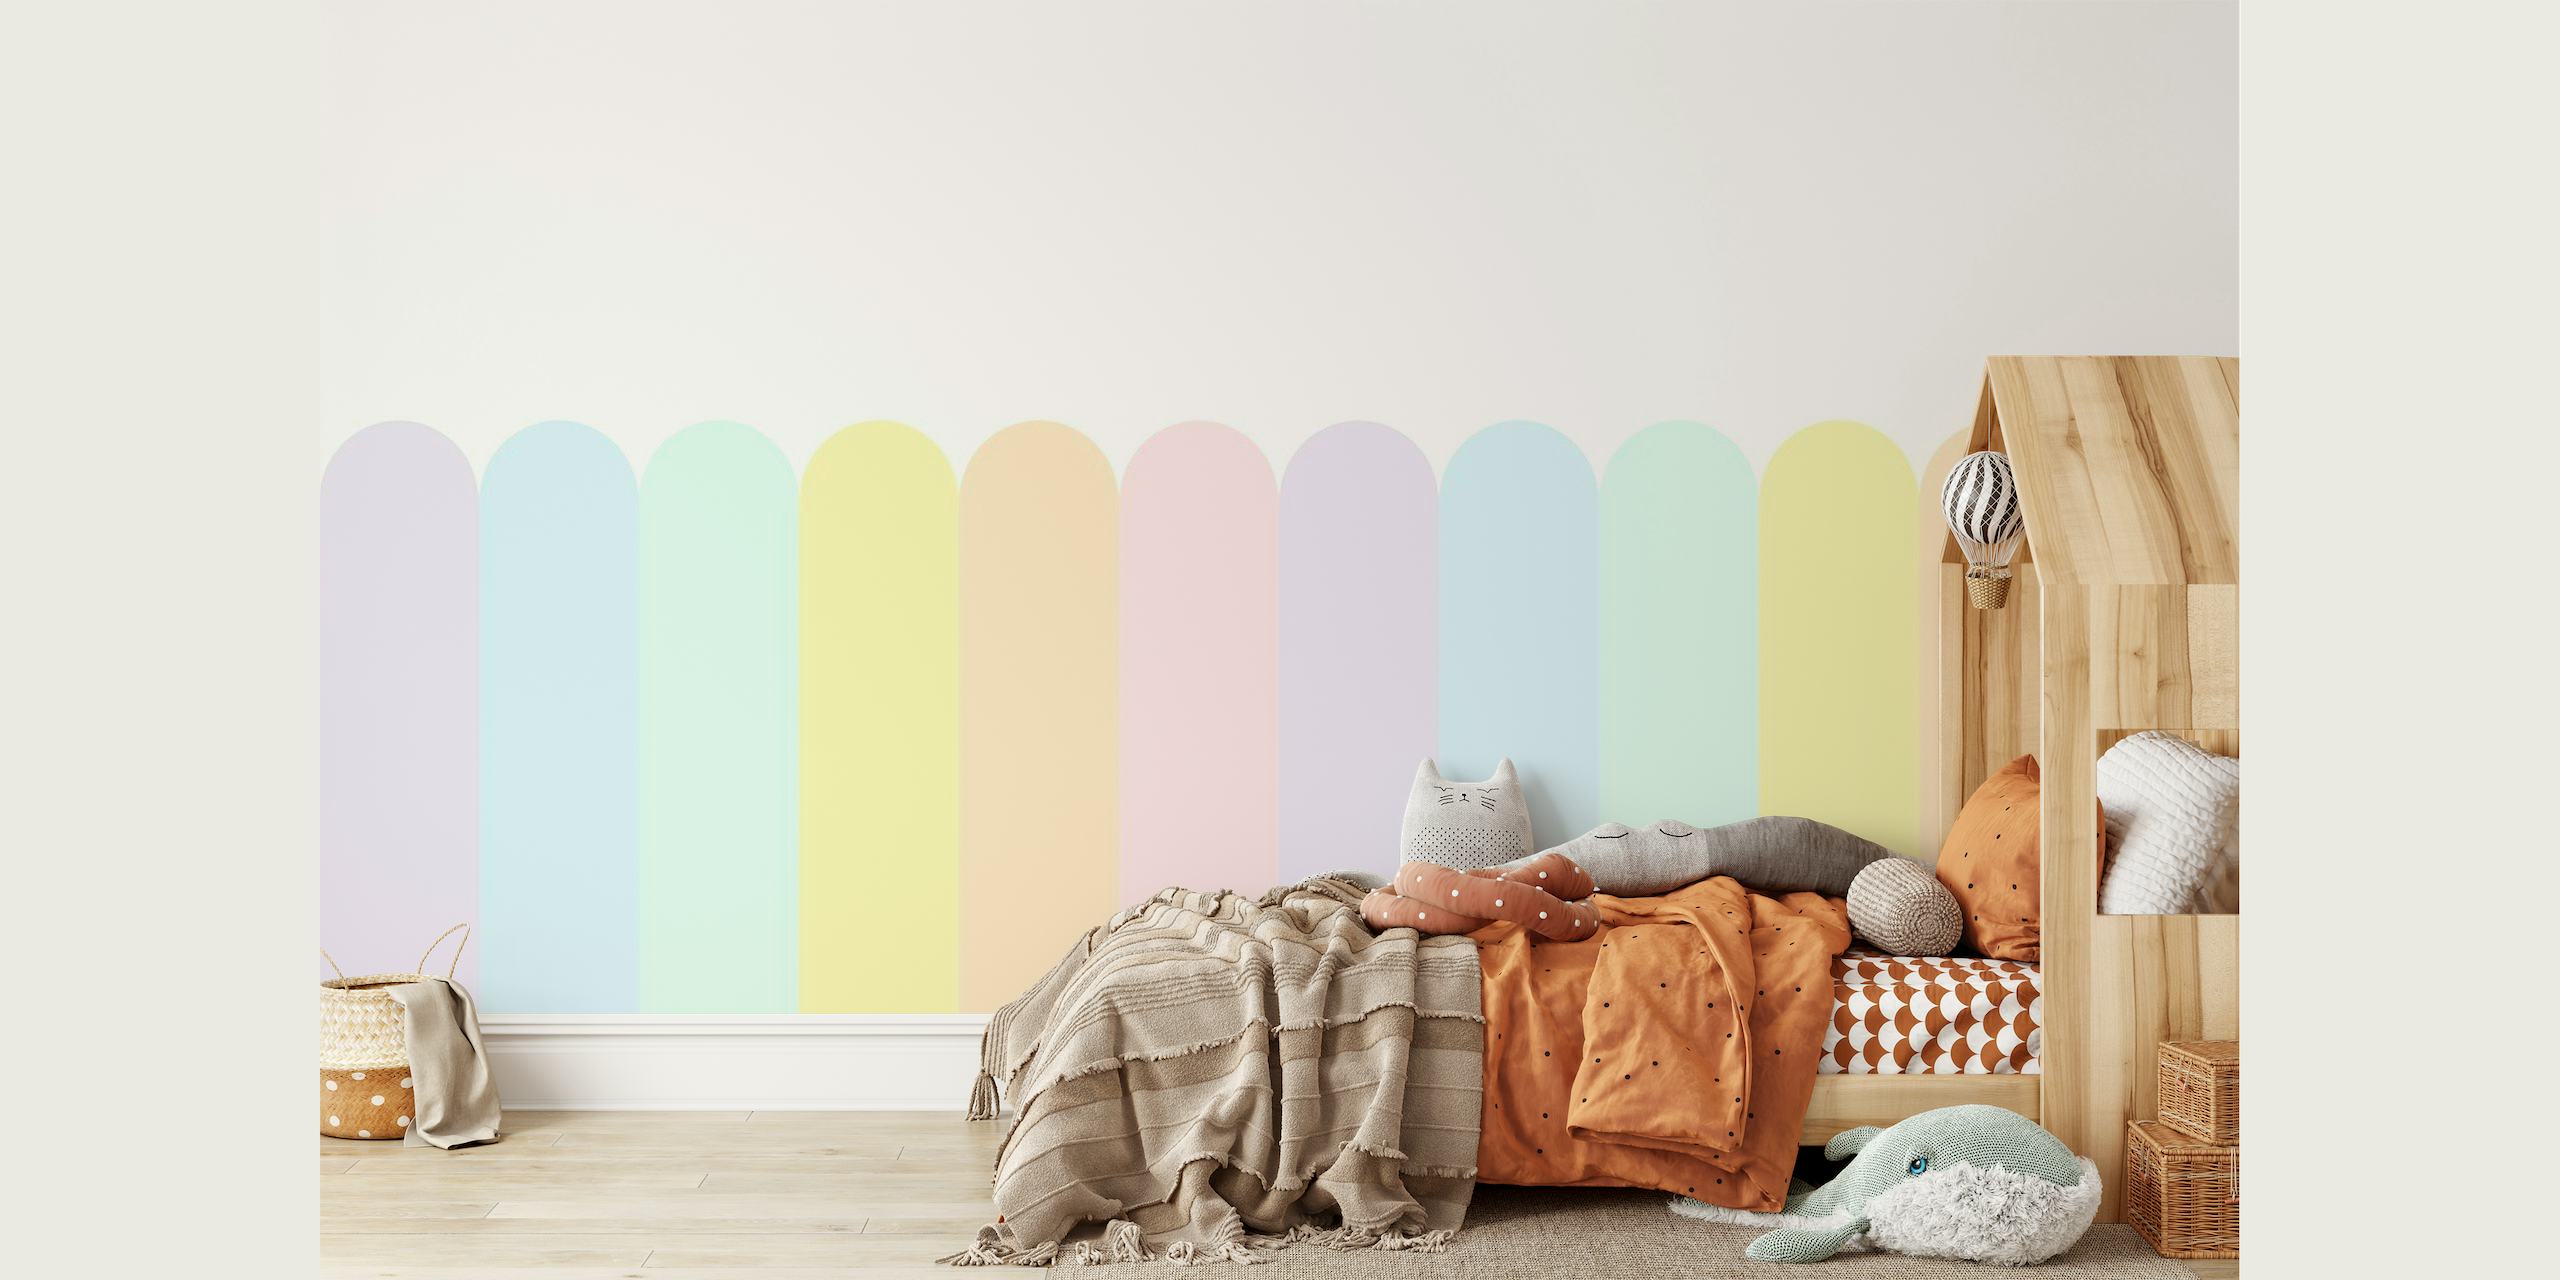 Zachte pastelkleurige regenboogkleuren in geschulpt patroon voor fotobehang